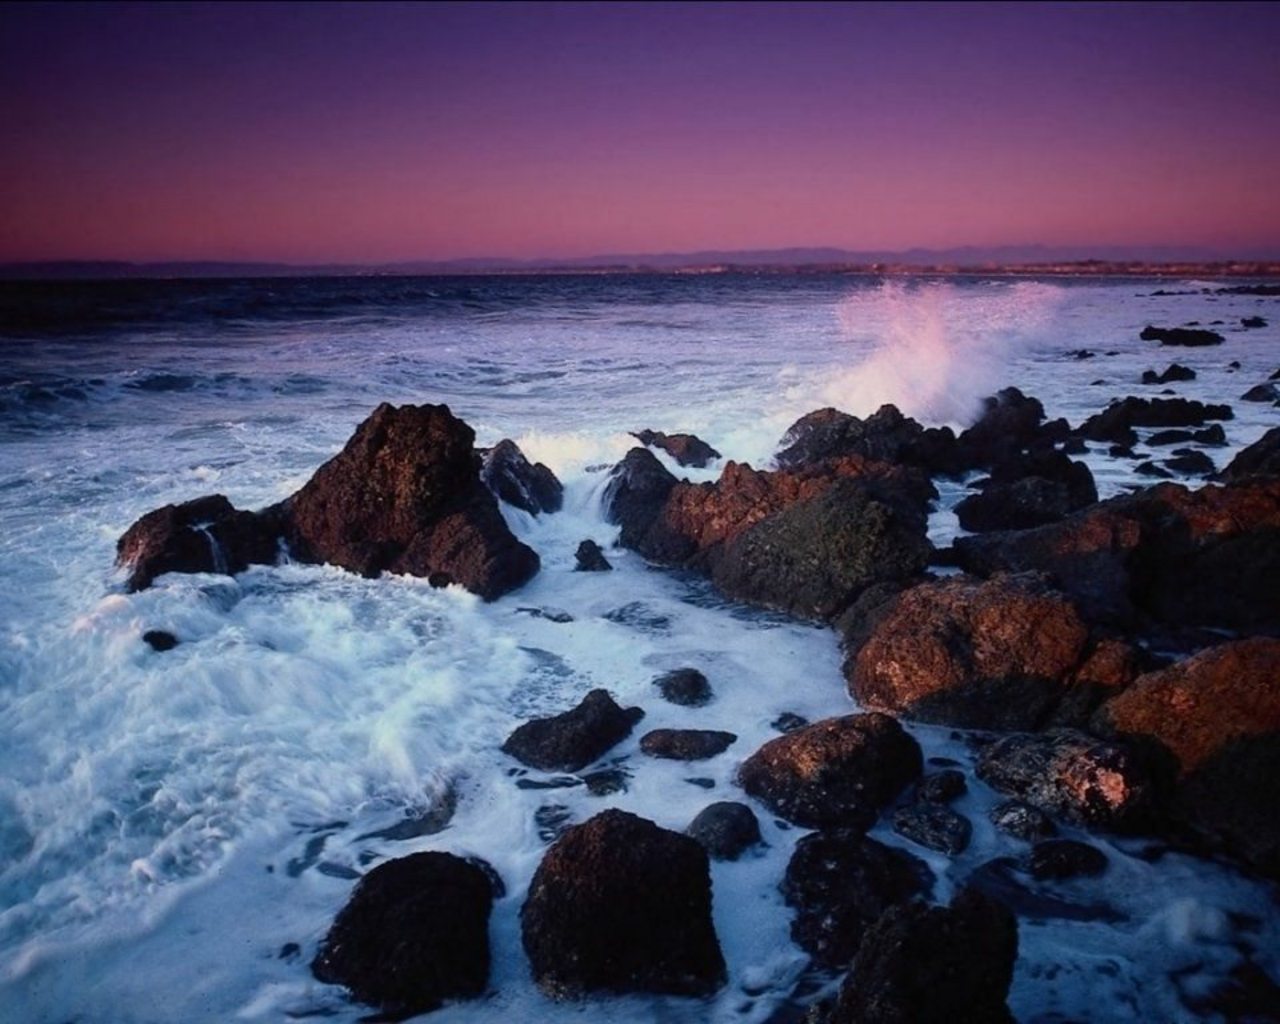 Fond d'ecran Ocean vagues sur rochers